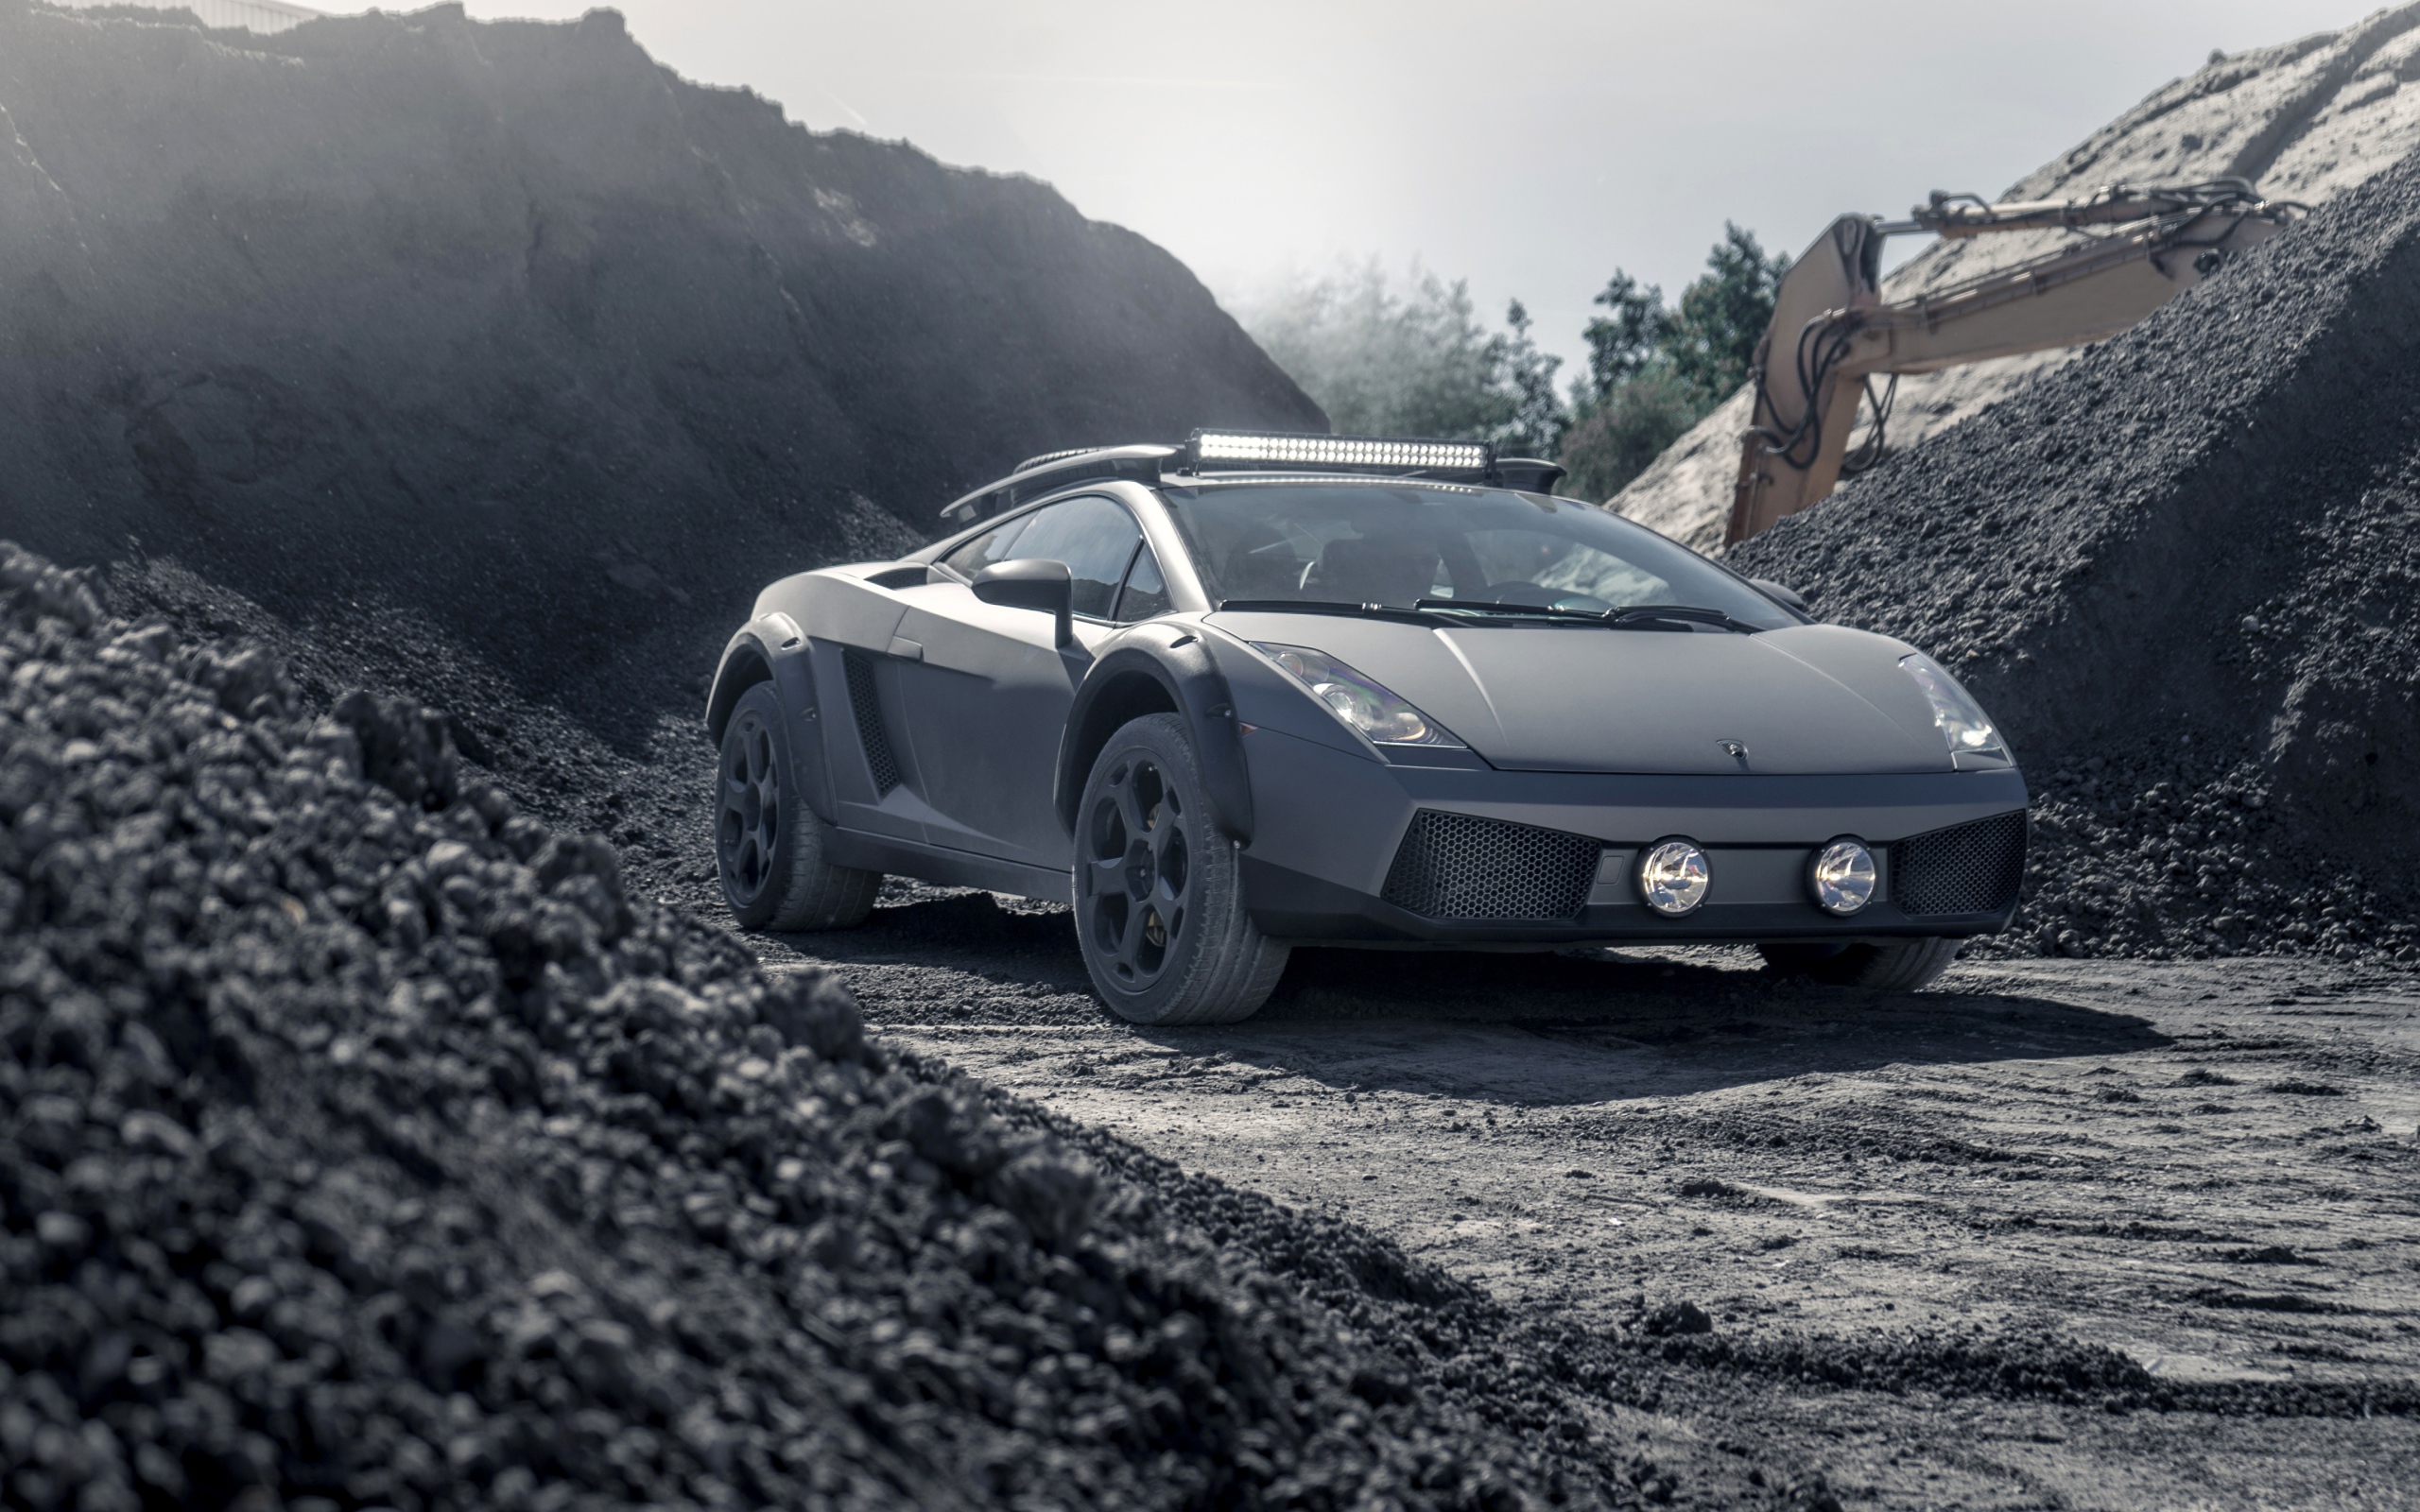 Автомобиль Lamborghini Gallardo Offroad 2019 года в карьере